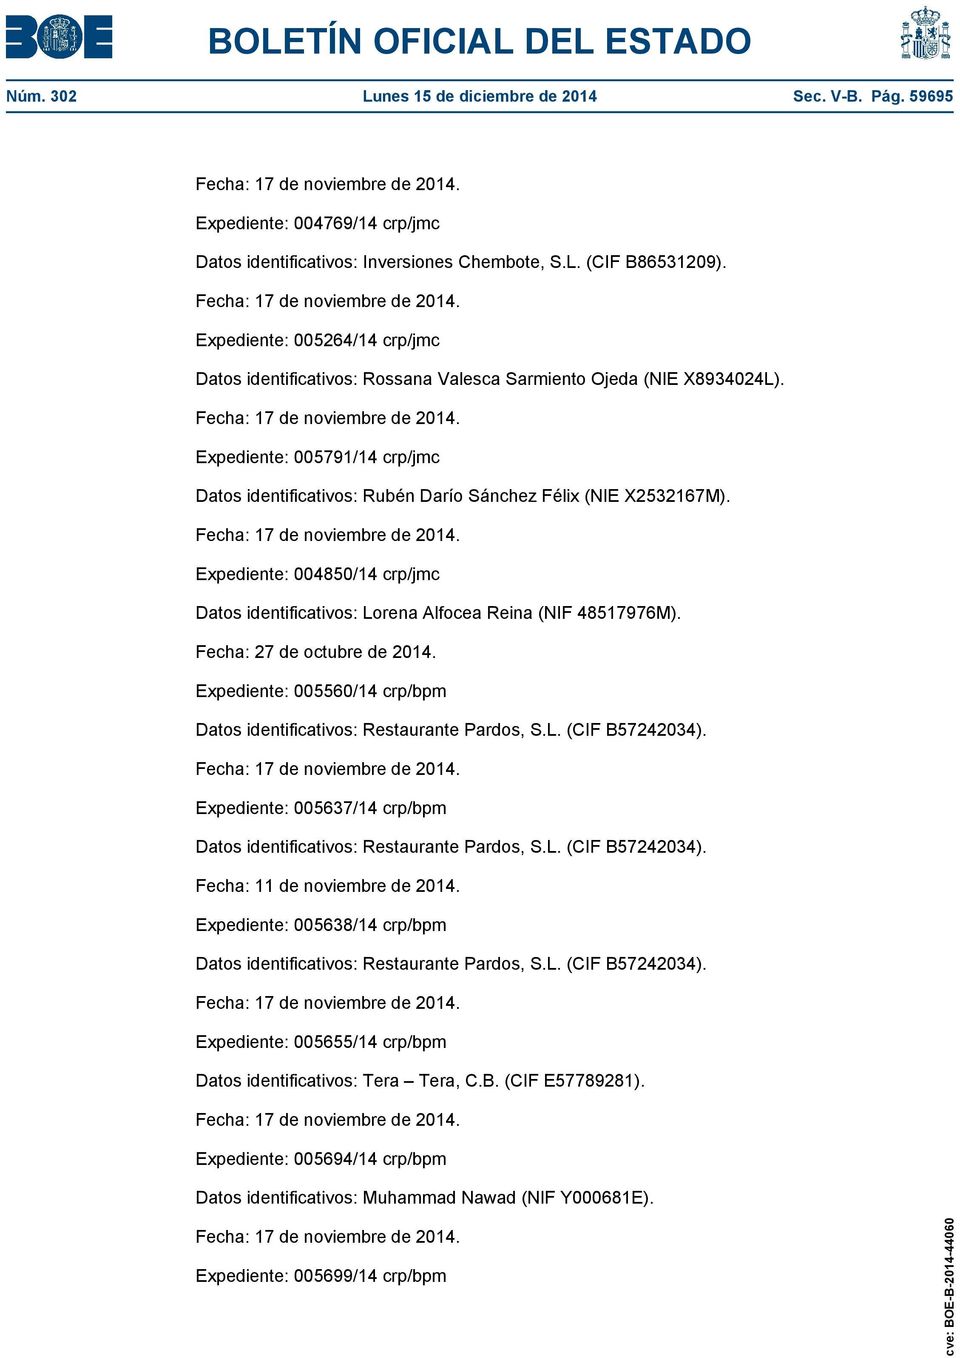 Expediente: 004850/14 crp/jmc Datos identificativos: Lorena Alfocea Reina (NIF 48517976M). Fecha: 27 de octubre de 2014.